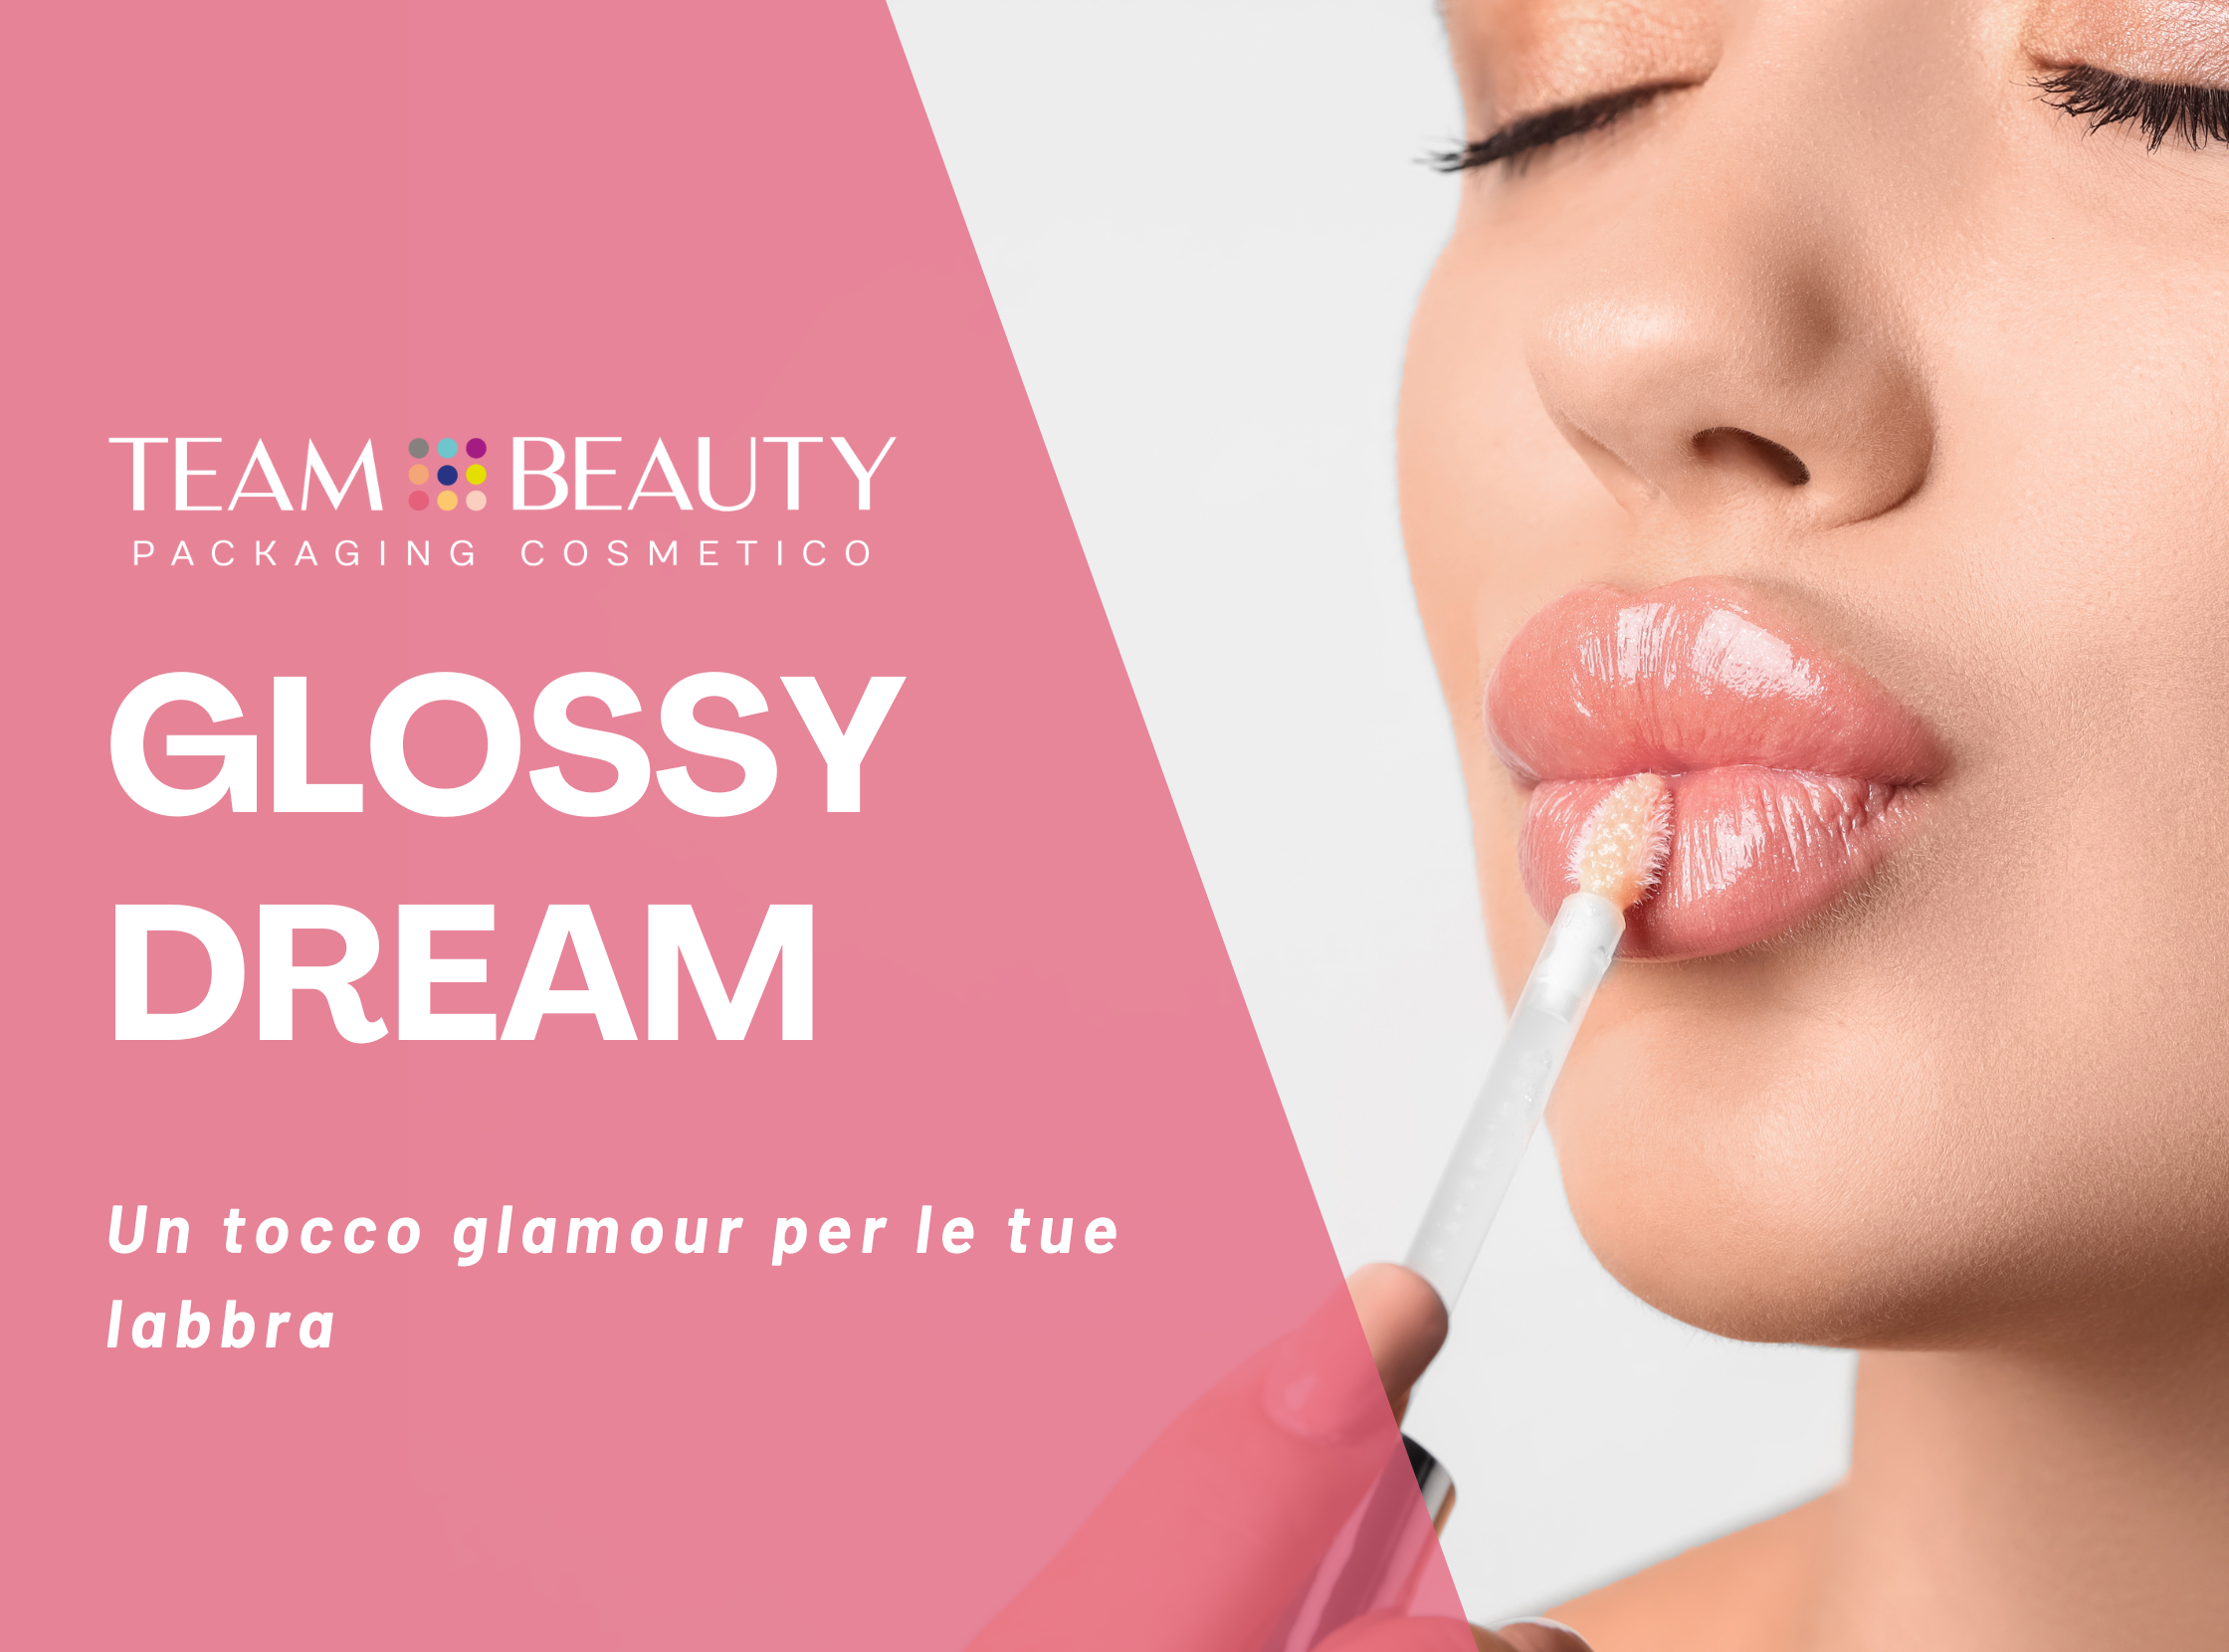 Glossy Dream: un tocco glamour per le tue labbra